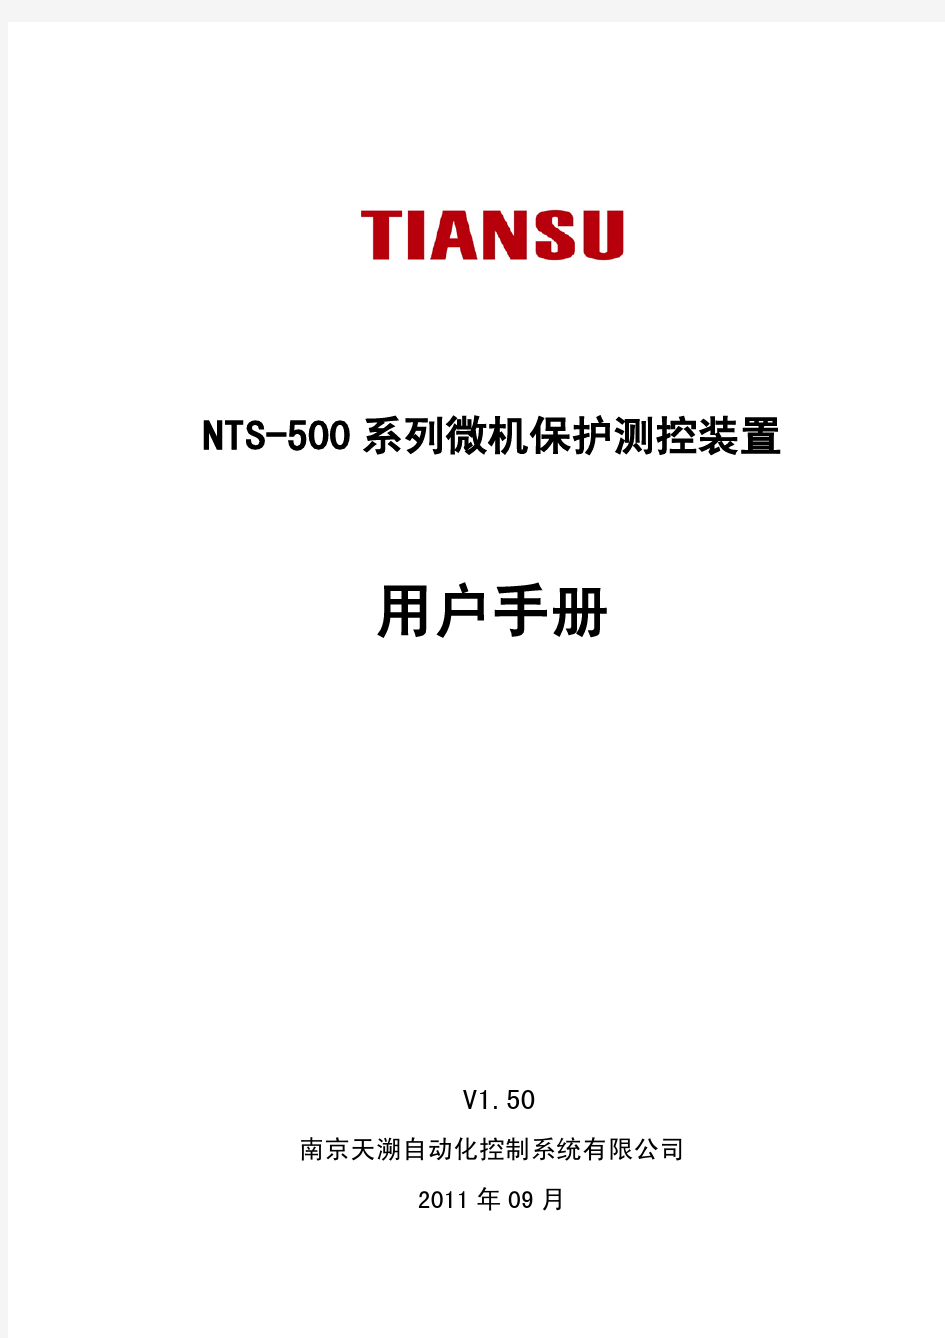 NTS-500系列微机保护测控装置用户手册111103